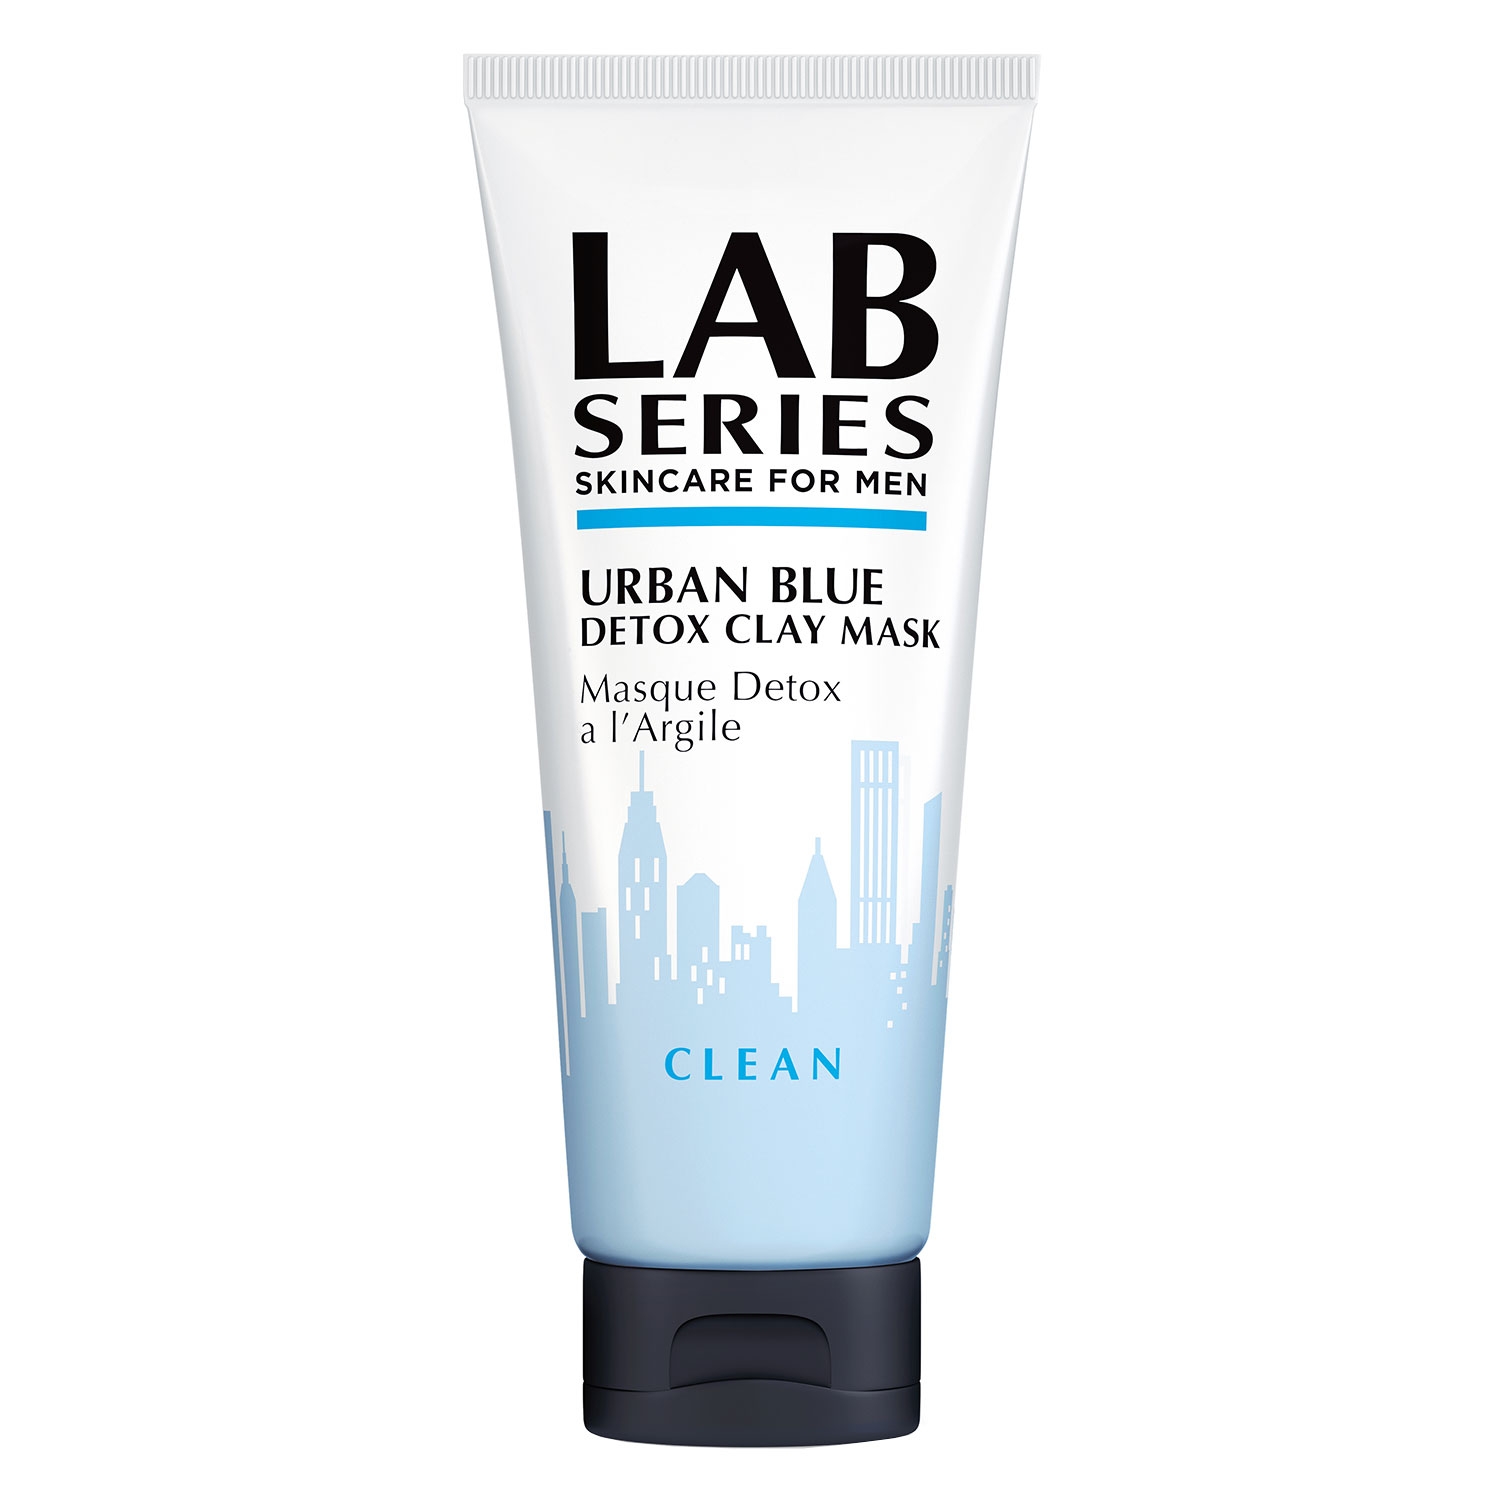 Produktbild von Clean - Urban Blue Detox Clay Mask